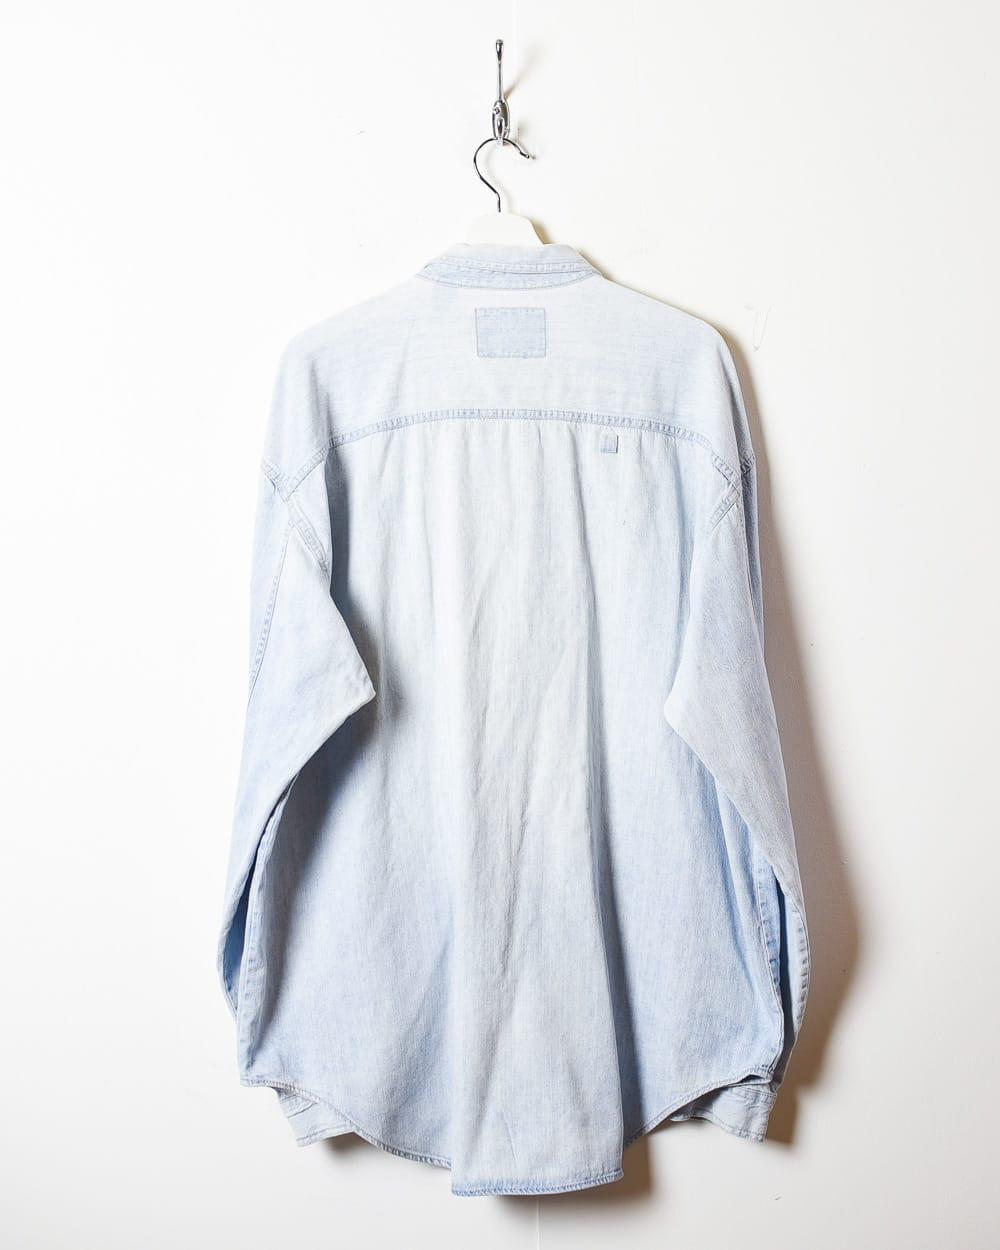 BabyBlue Levi's Denim Shirt - XX-Large